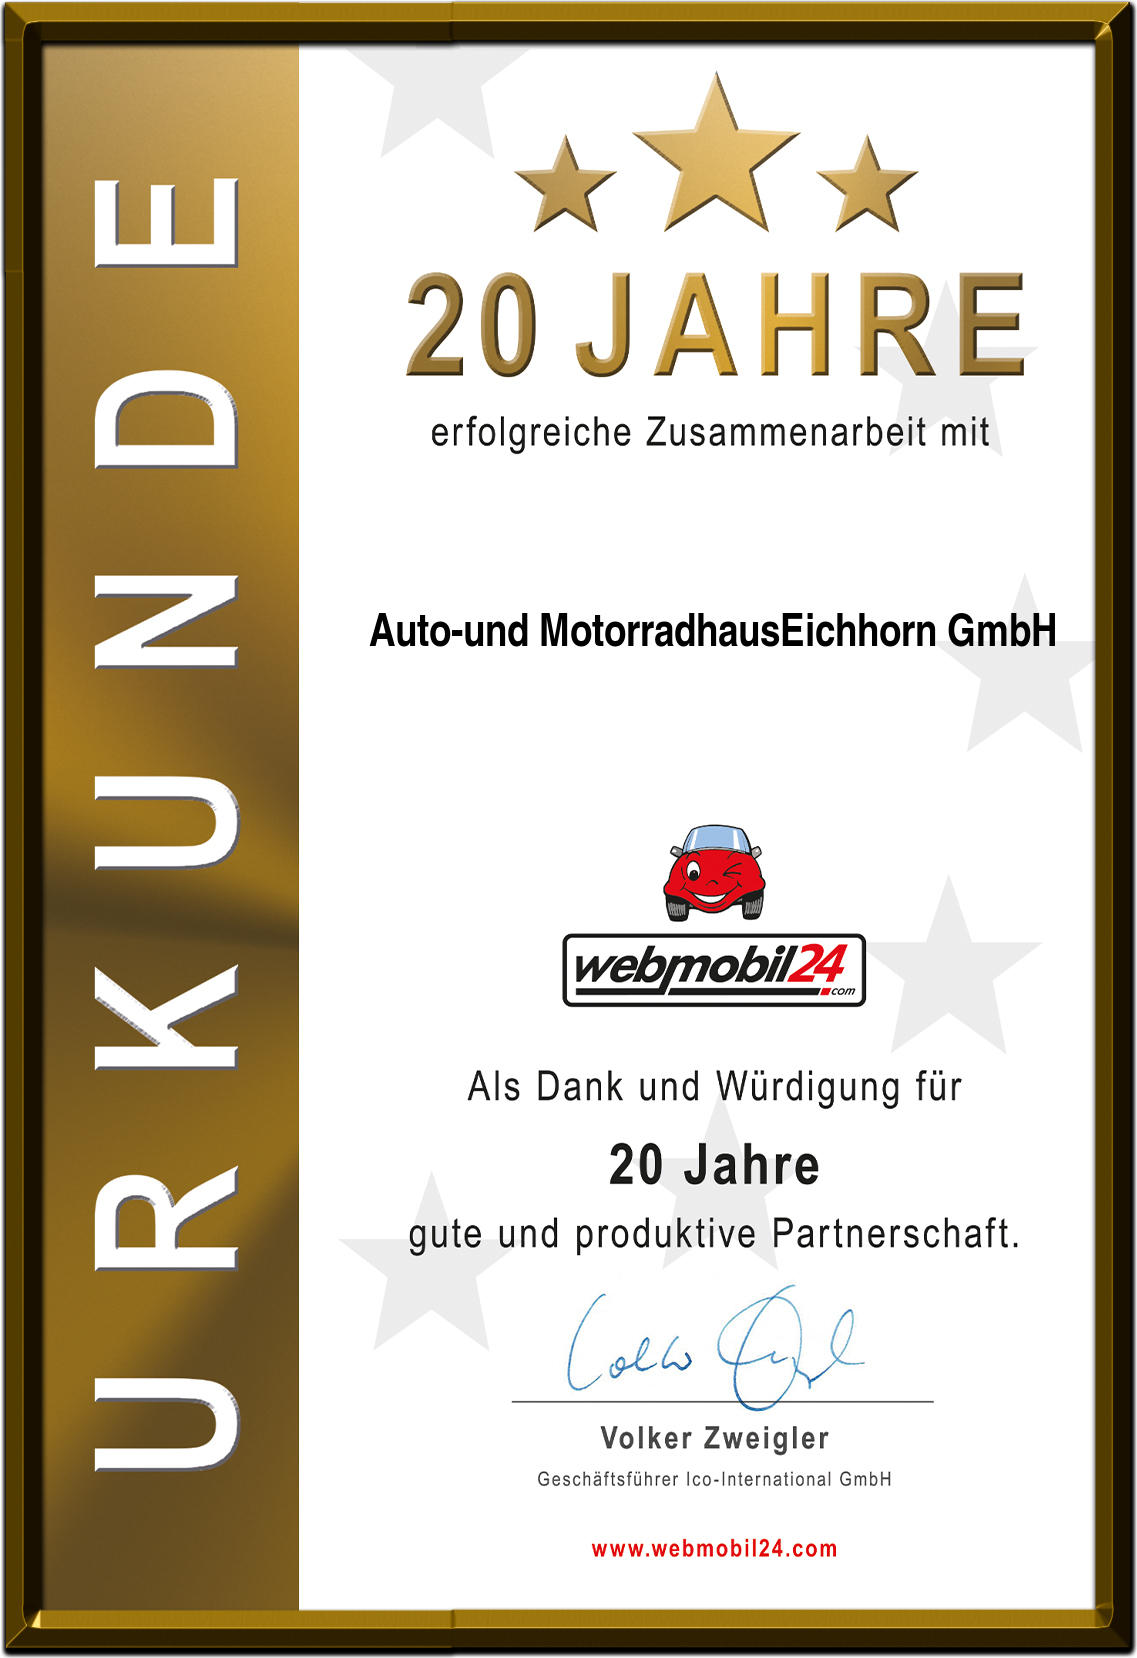 Auto-und MotorradhausEichhorn GmbH